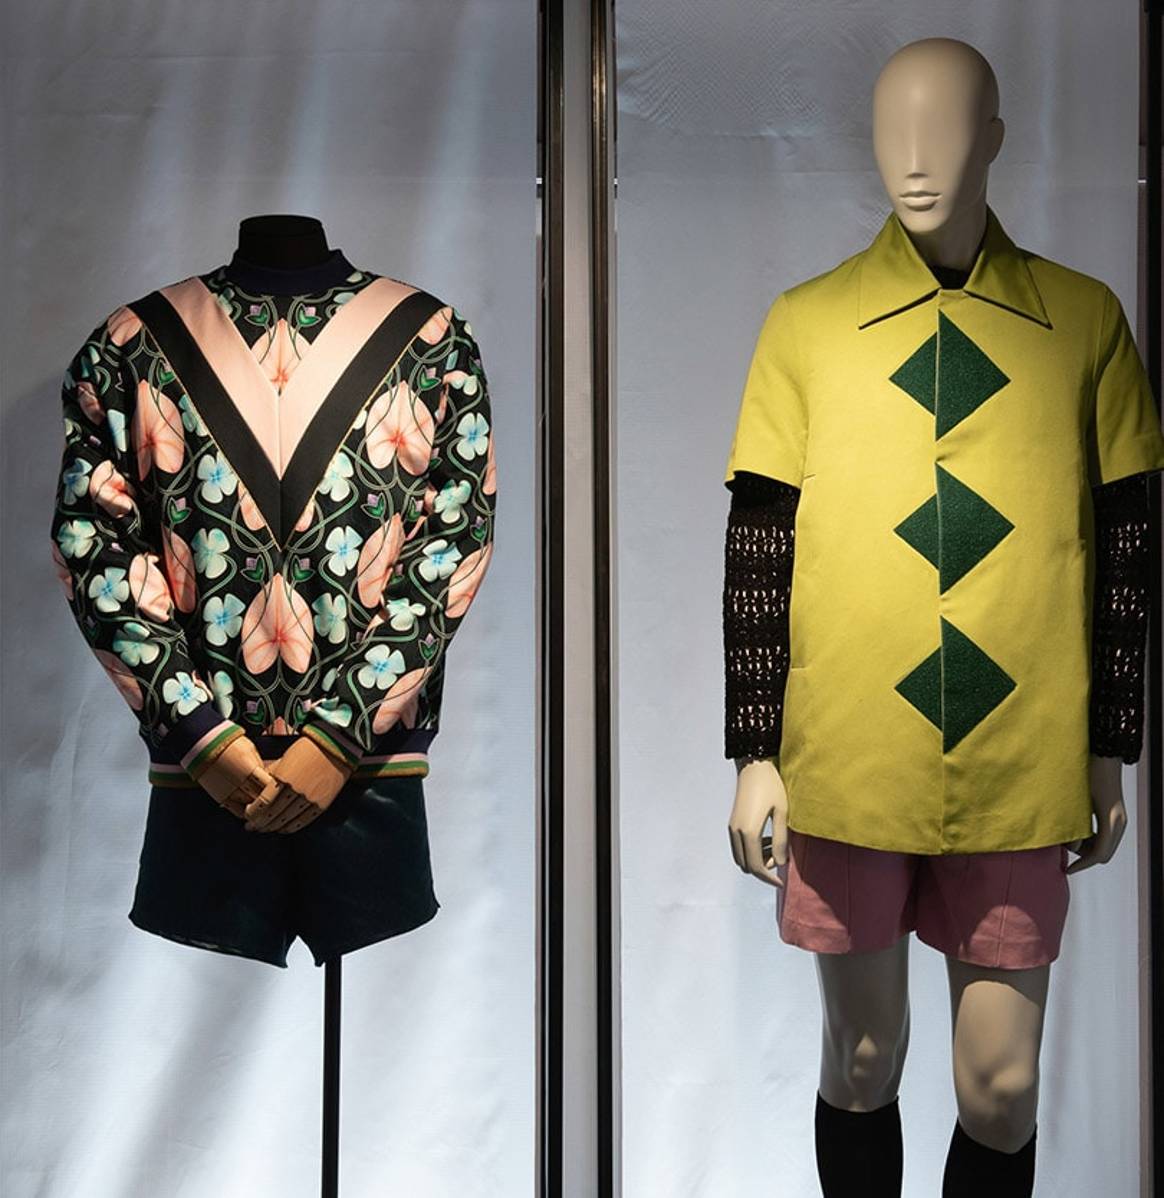 Binnenkijken: De ‘Masculinities’ tentoonstelling in het Mode- en Kantmuseum